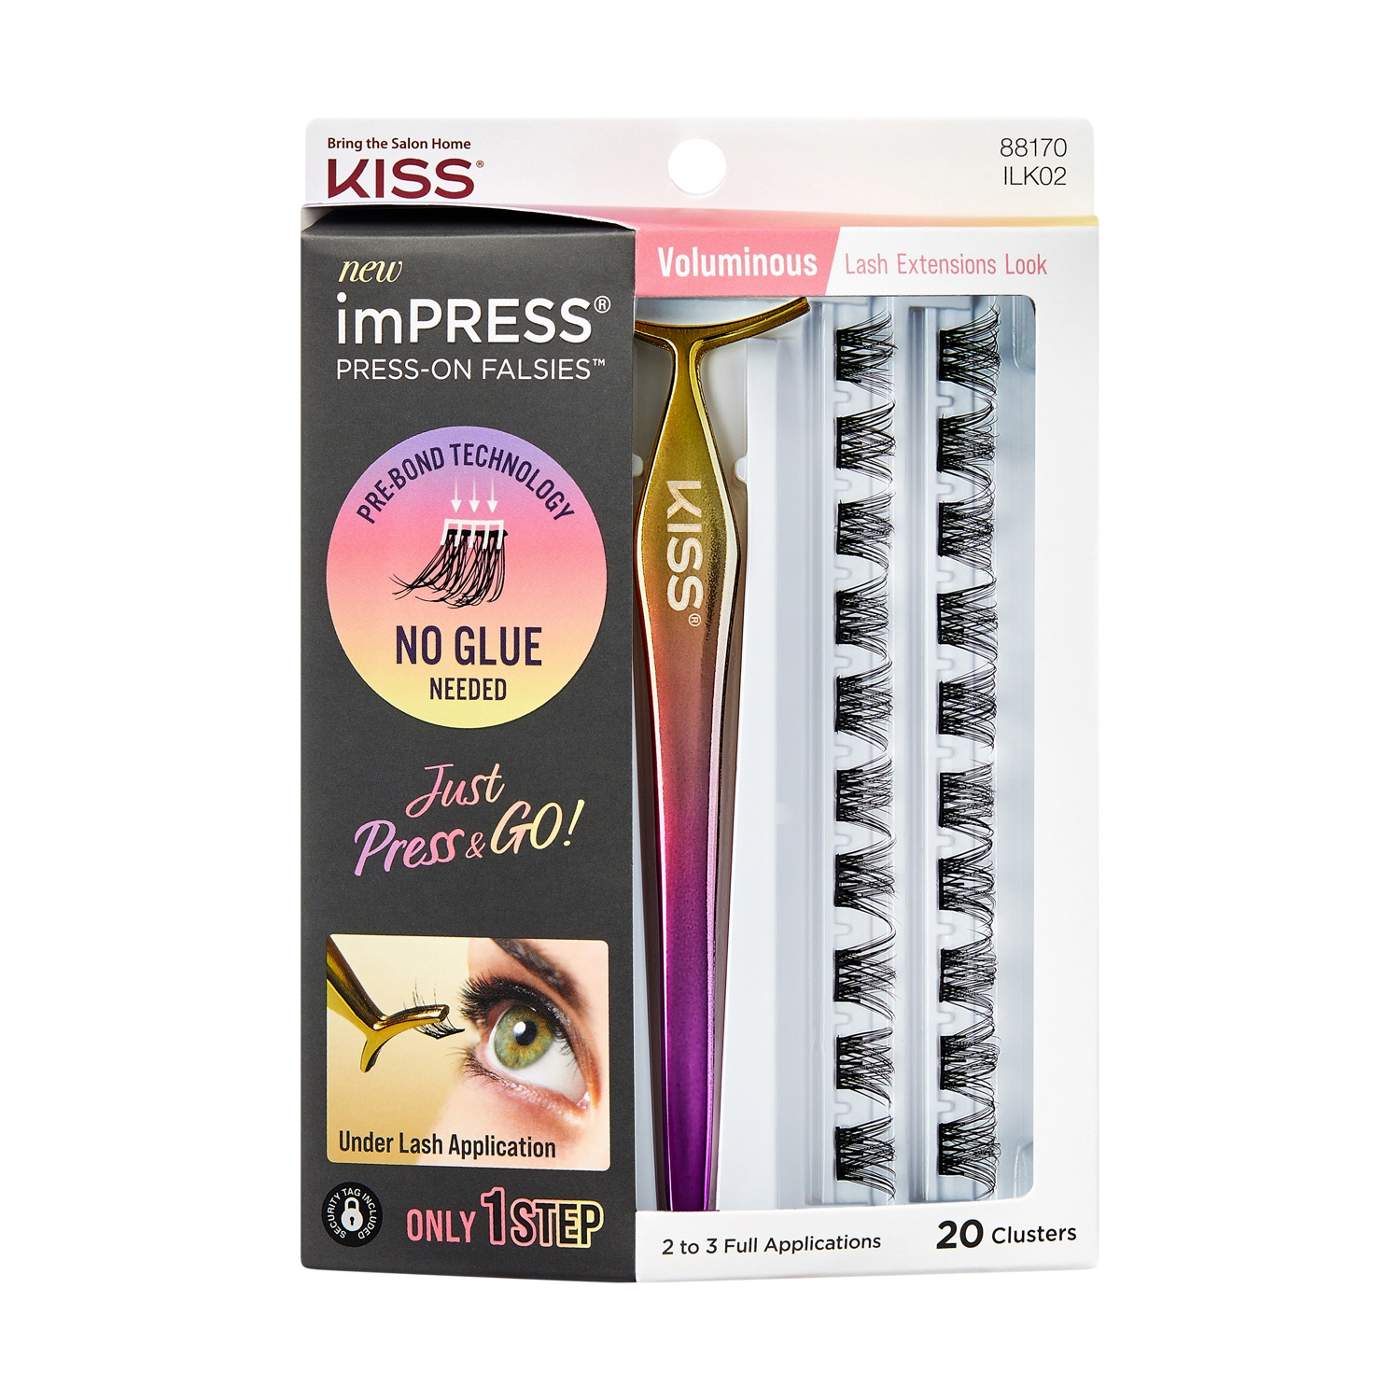 KISS imPRESS Press-On Falsies Lash Extensions Kit - Voluminous; image 1 of 5